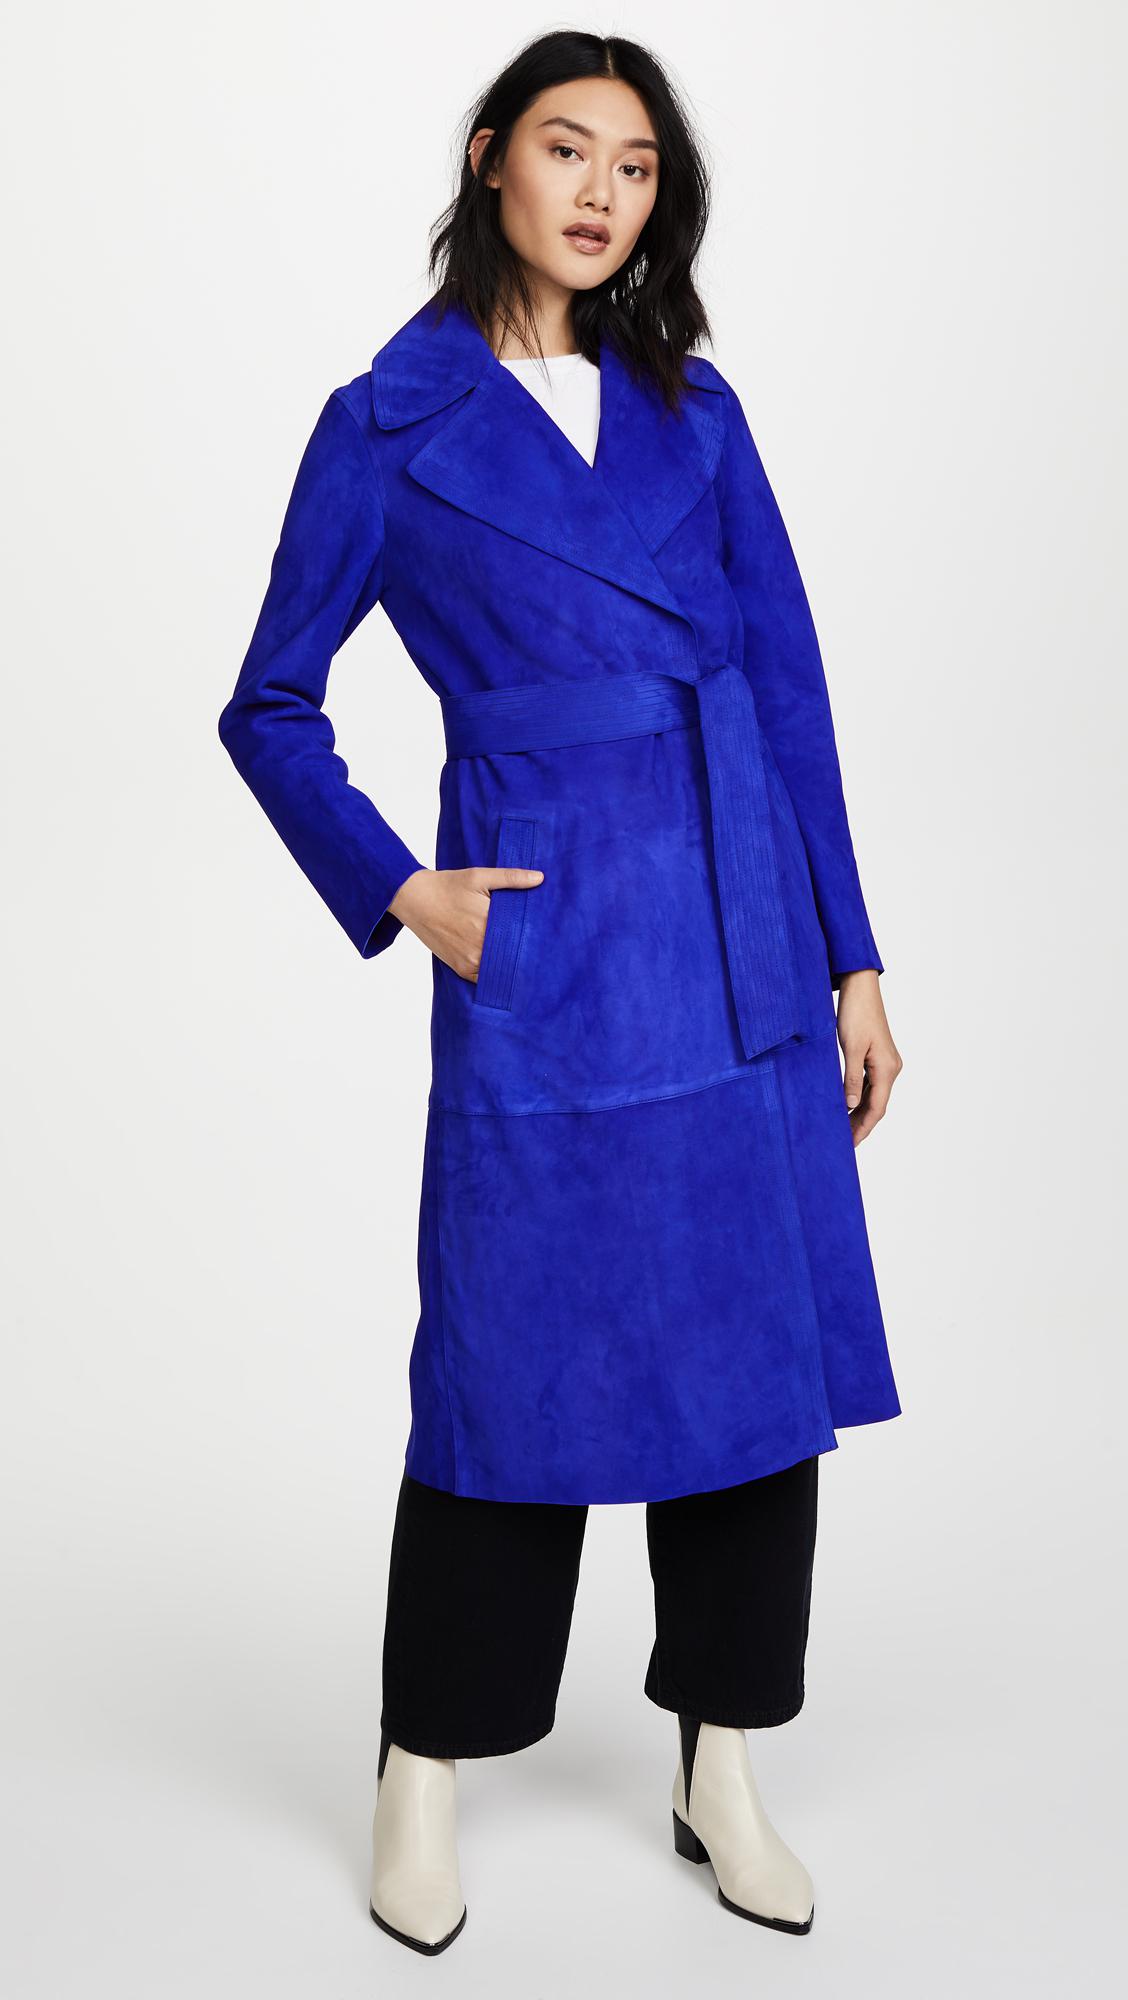 Diane von Furstenberg Suede Trench Coat in Blue | Lyst Canada